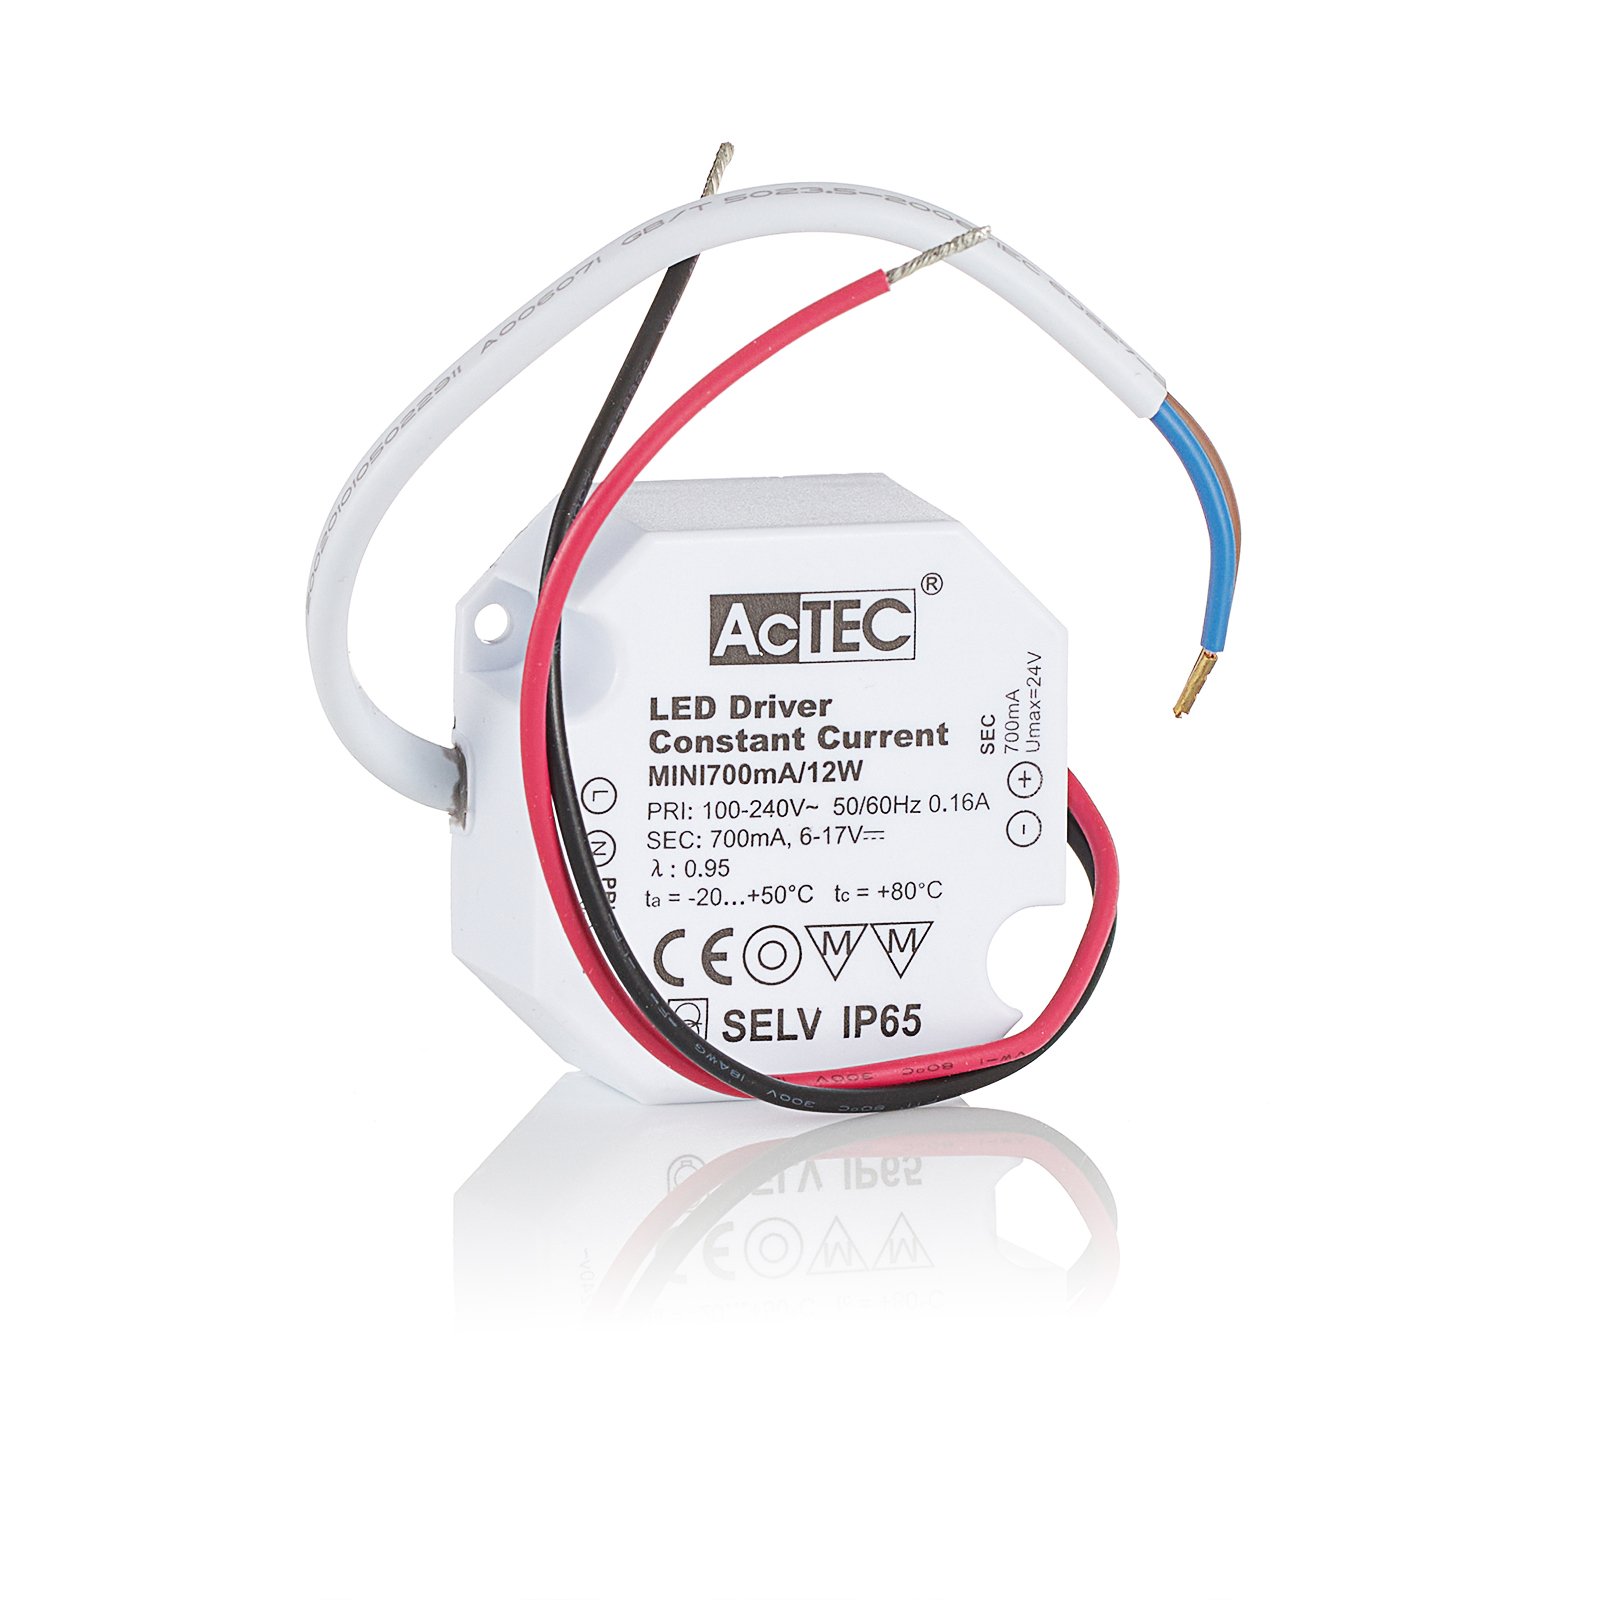 AcTEC Mini LED ovladač CC 700mA, 12W, IP65